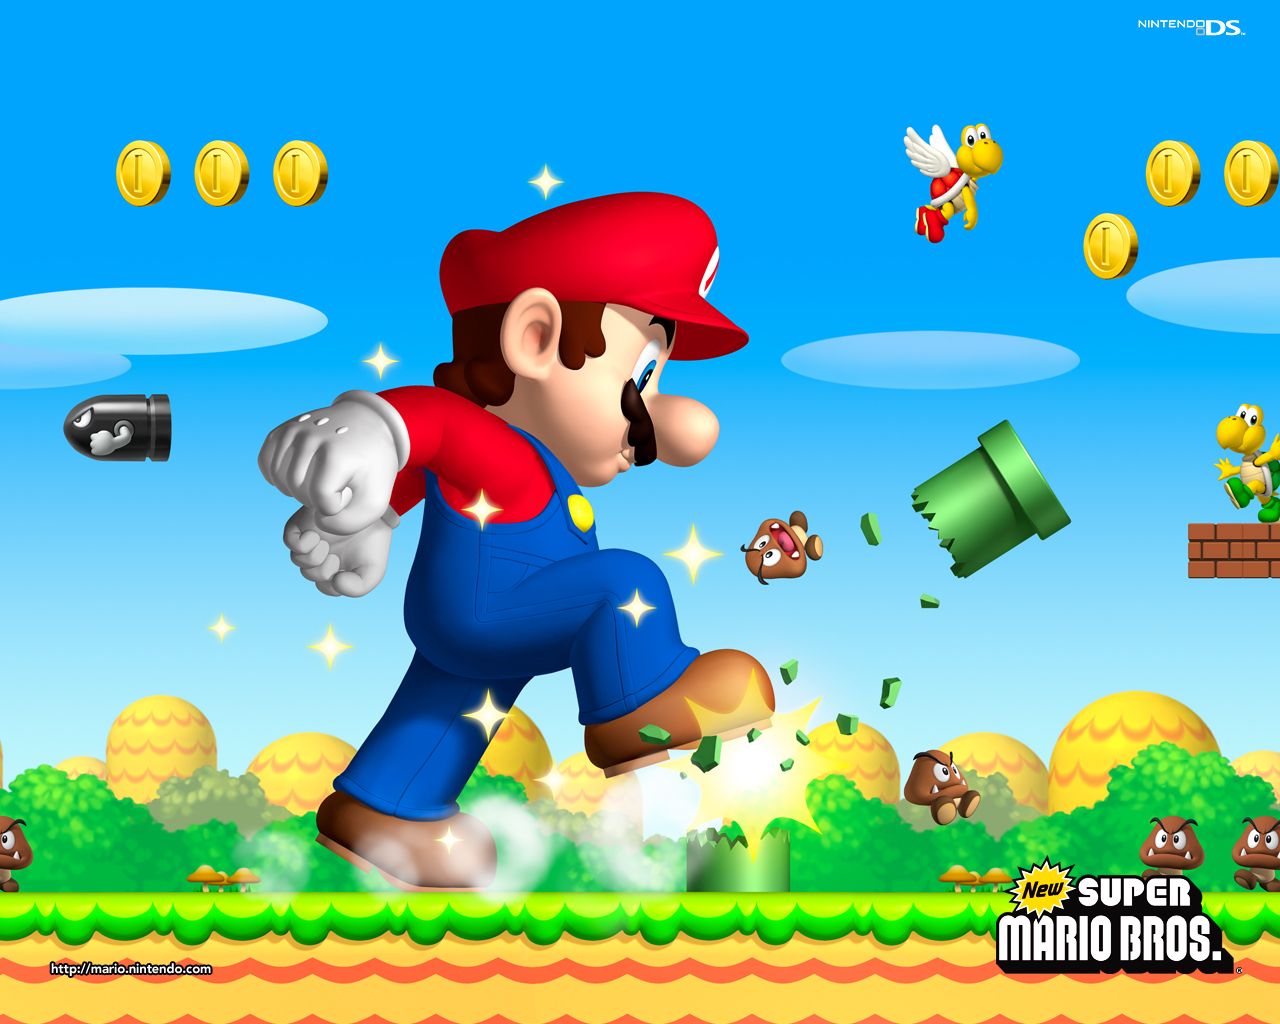 New Super Mario Brothers Wallpaper - Super Mario Bros. Wallpaper